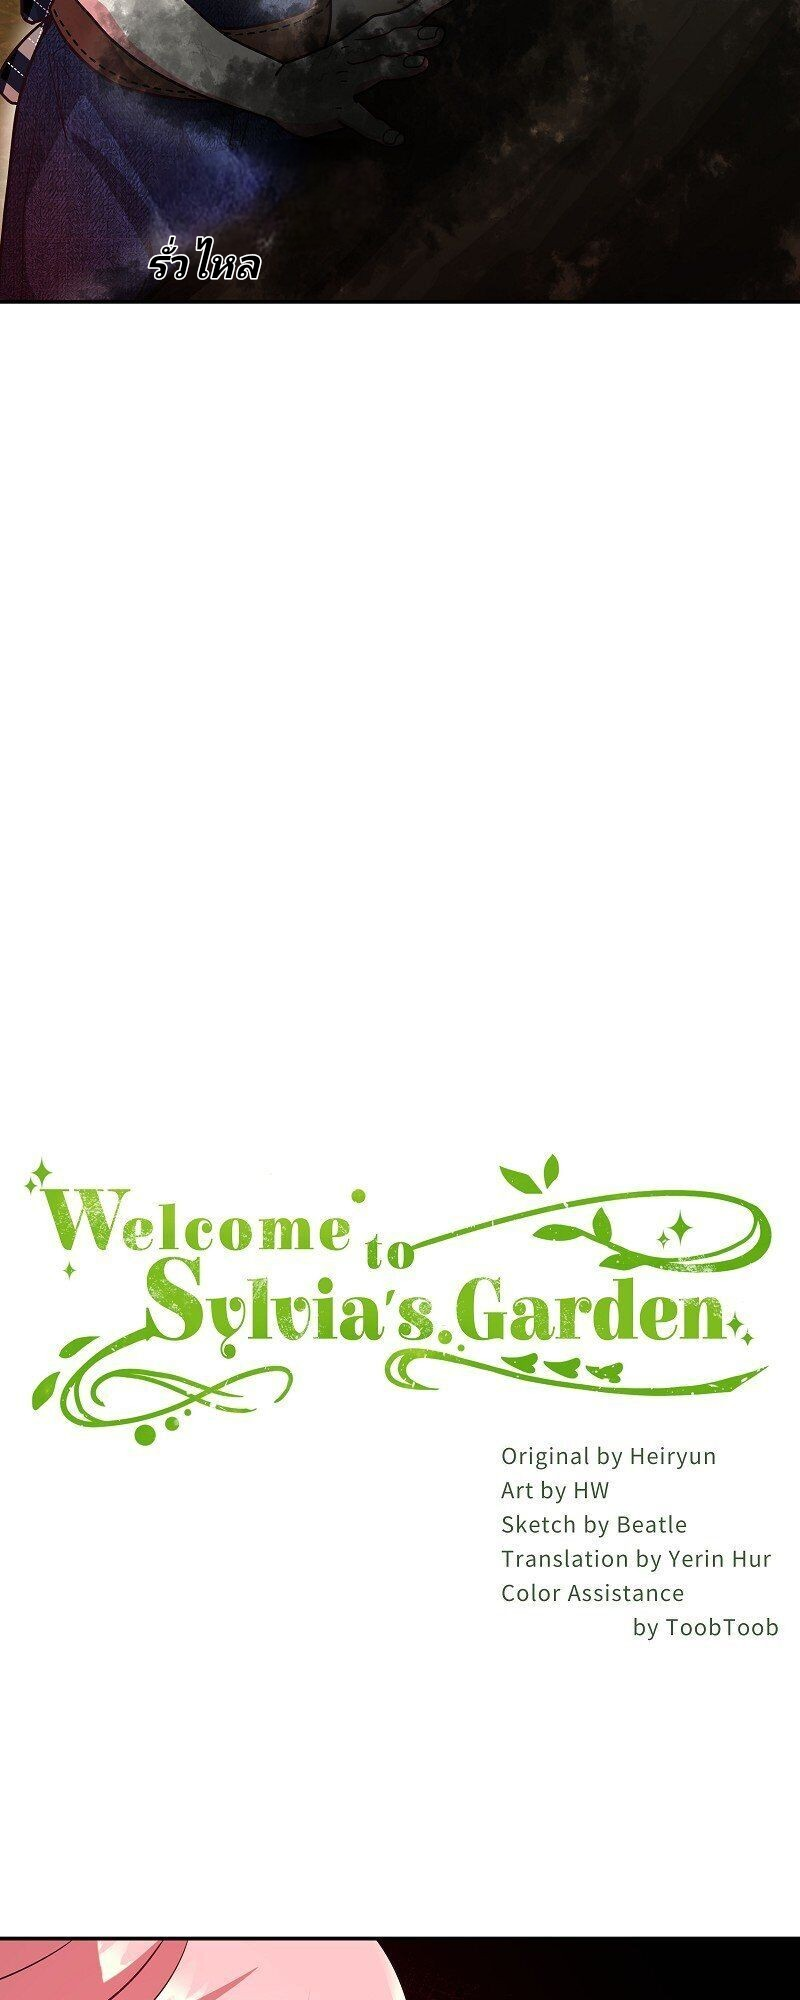 Welcome to Sylvia’s Garden 9 (6)